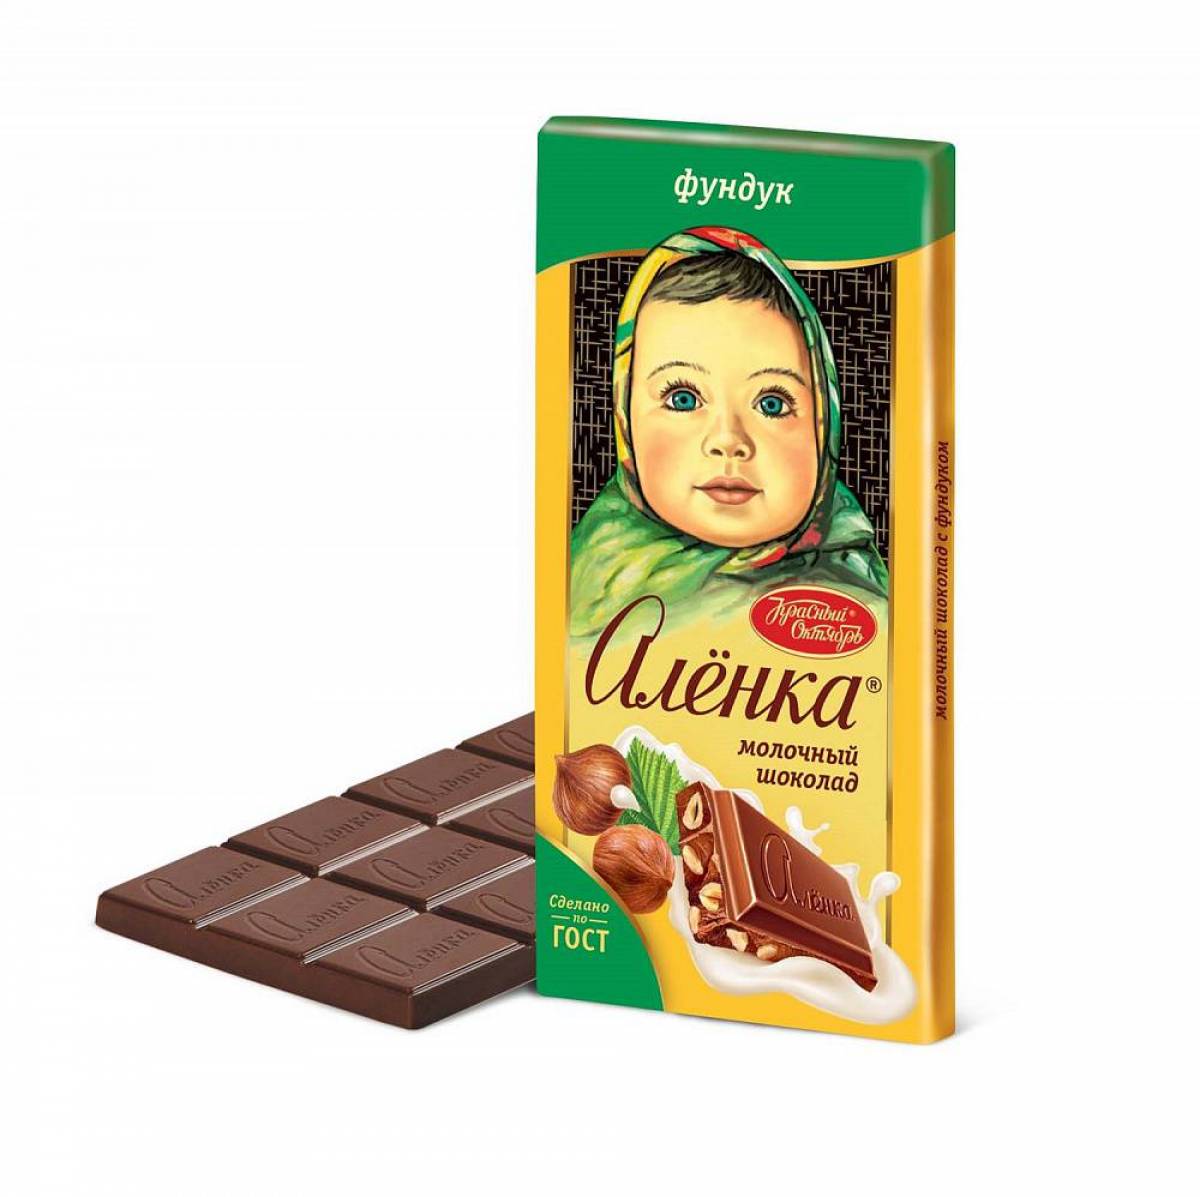 Шоколад аленка #36